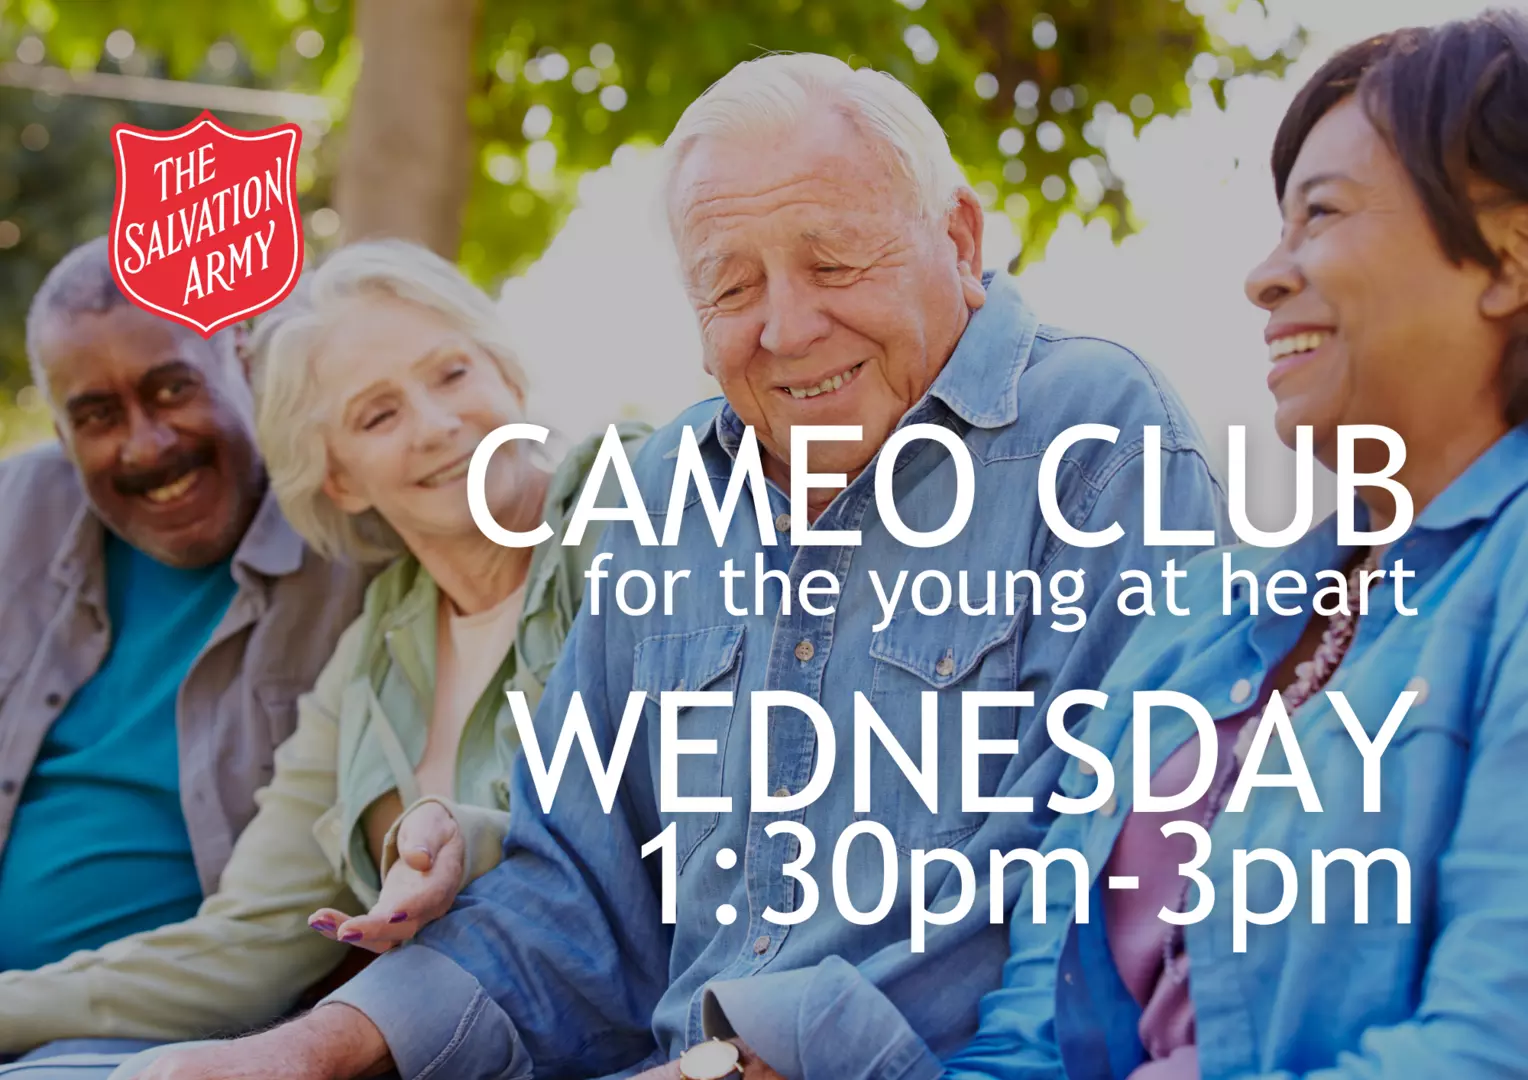 CAMEO Club, Wednesdays 1:30pm-3pm